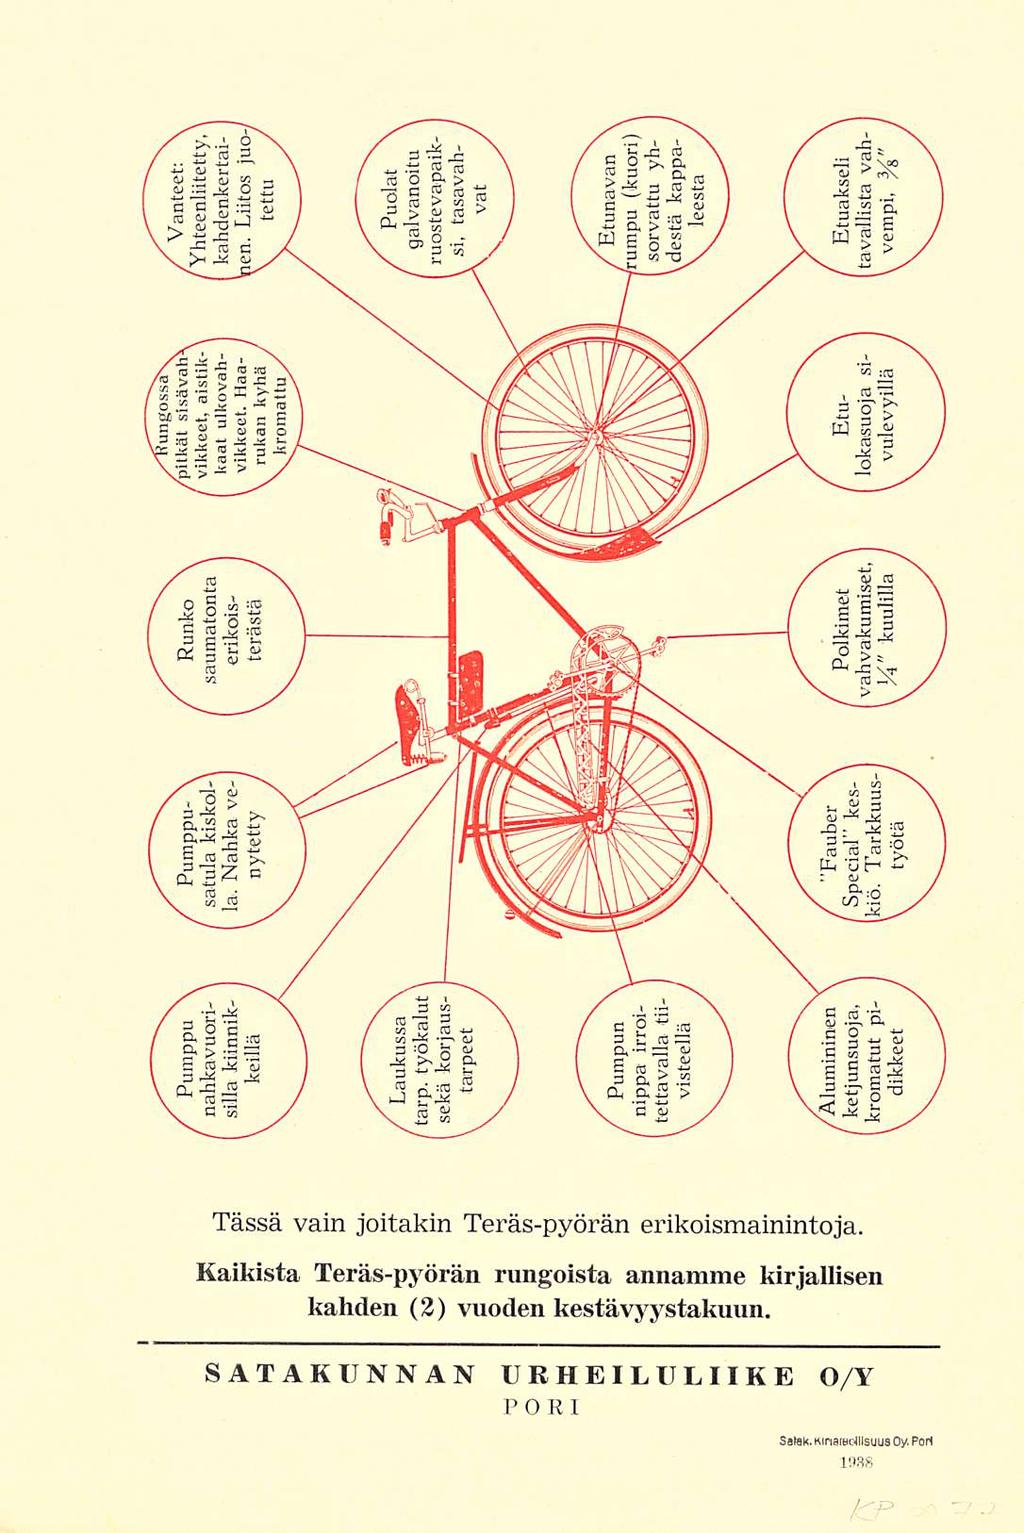 Tässä vain joitakin Teräs-pyörän erikoismainintoja.